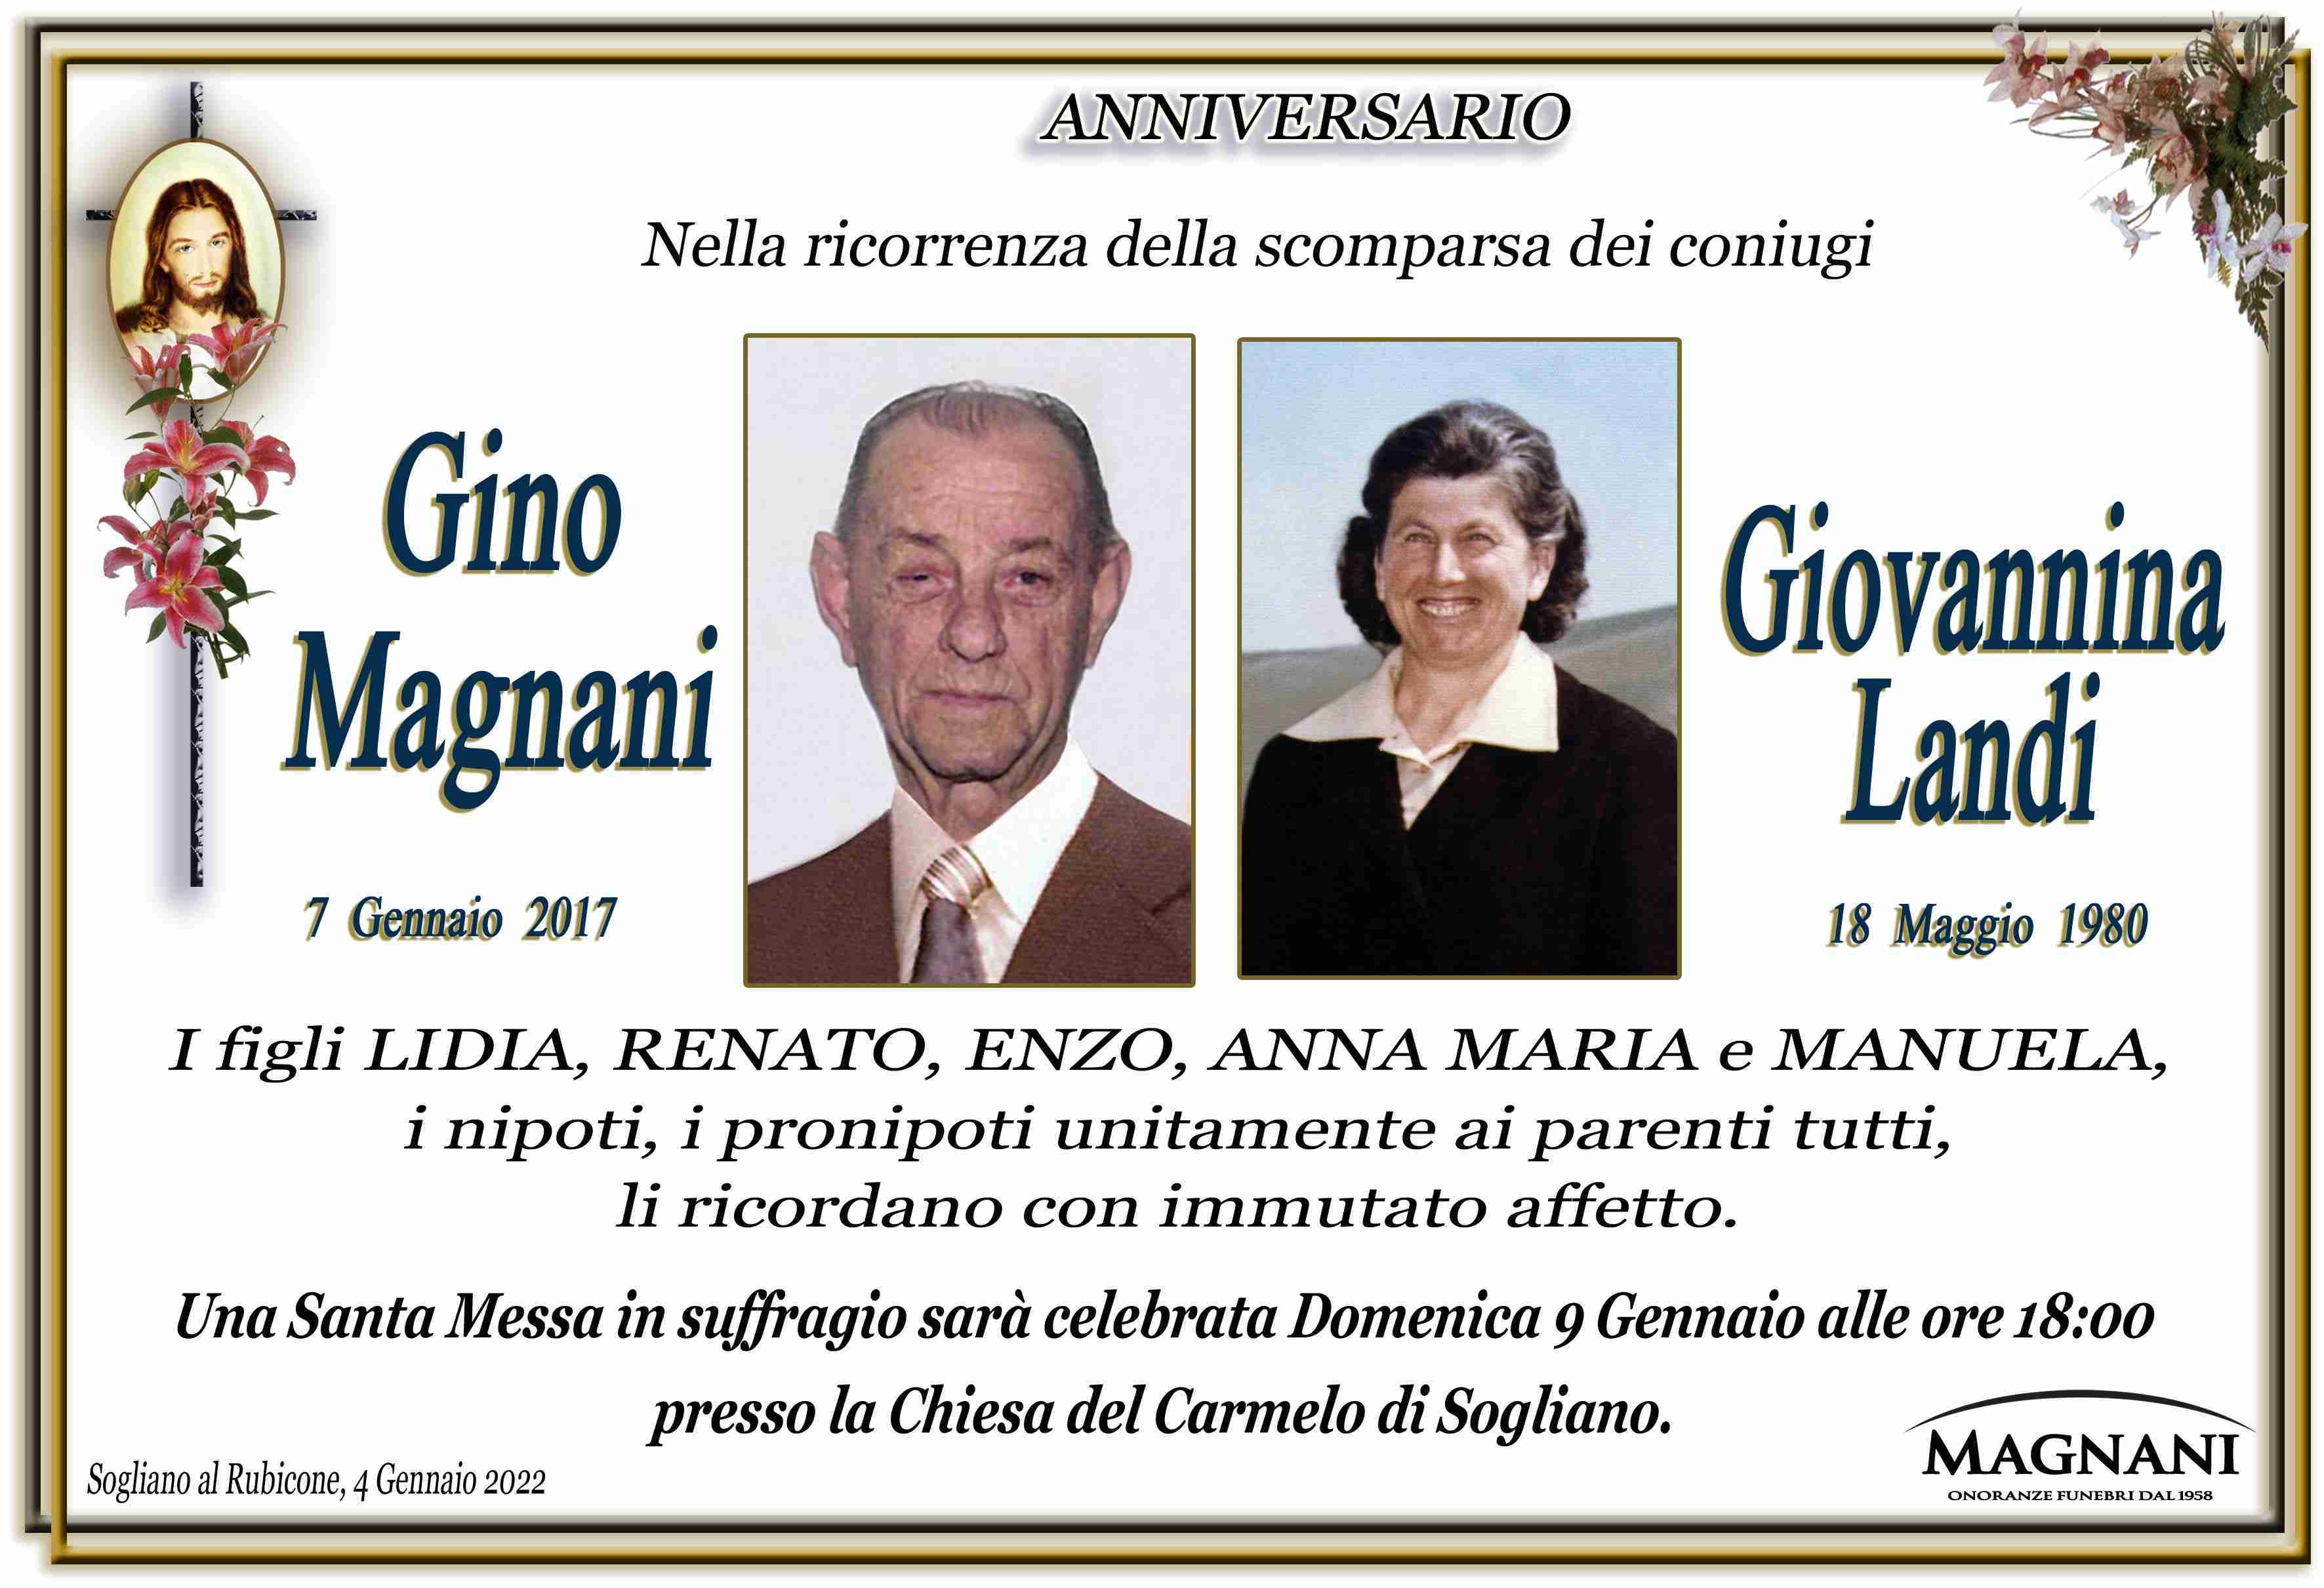 Gino Magnani e Giovannina Landi